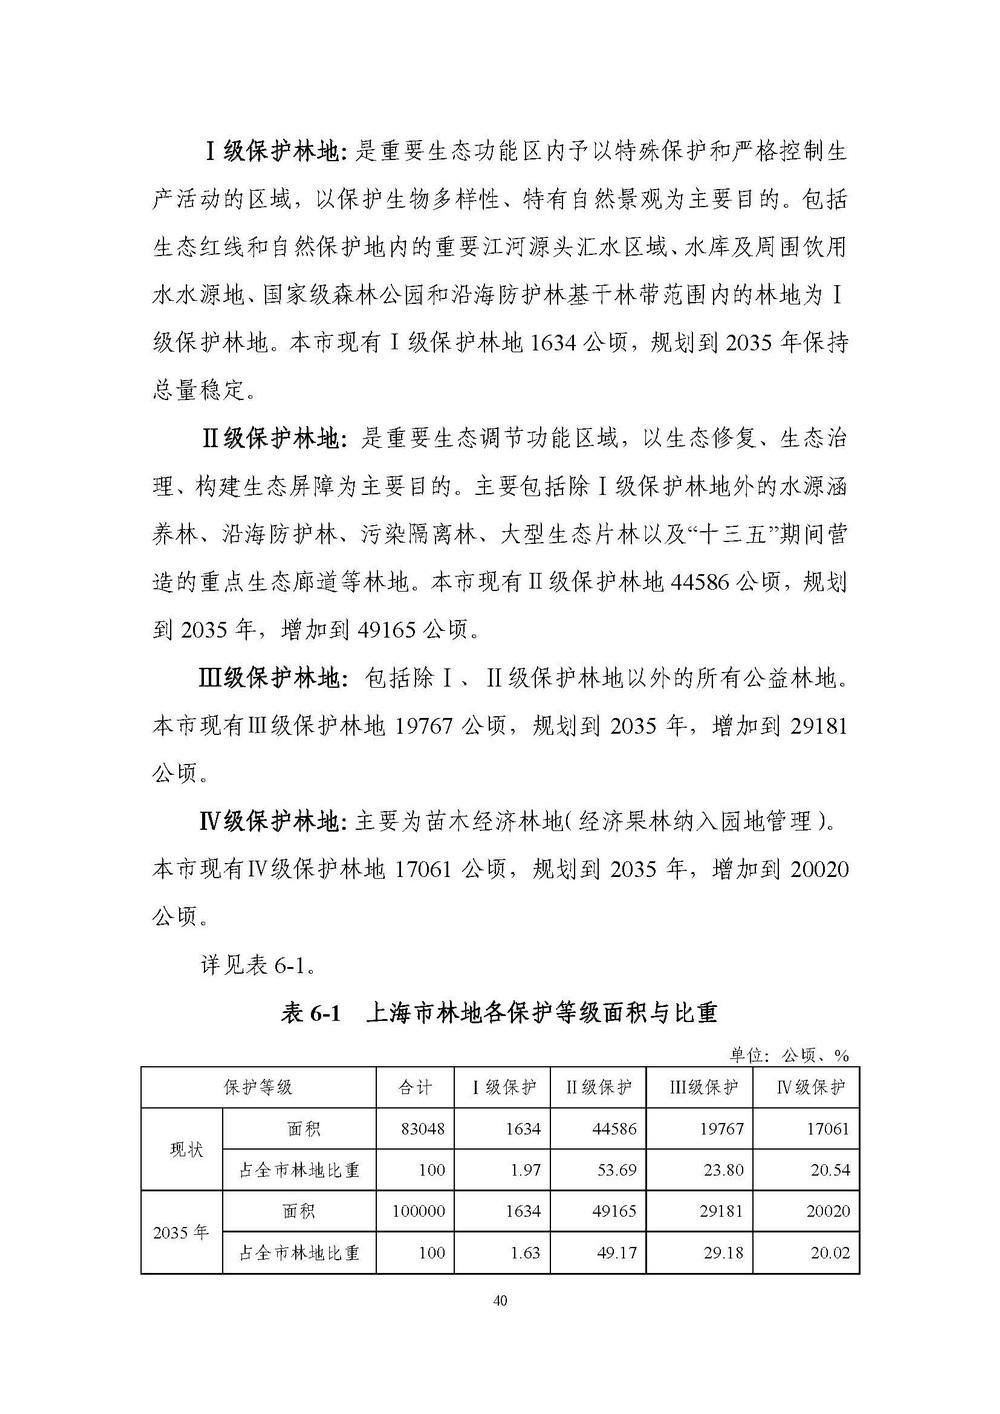 上海市森林和林地保护利用规划文本 公开稿 附图_页面_43.jpg